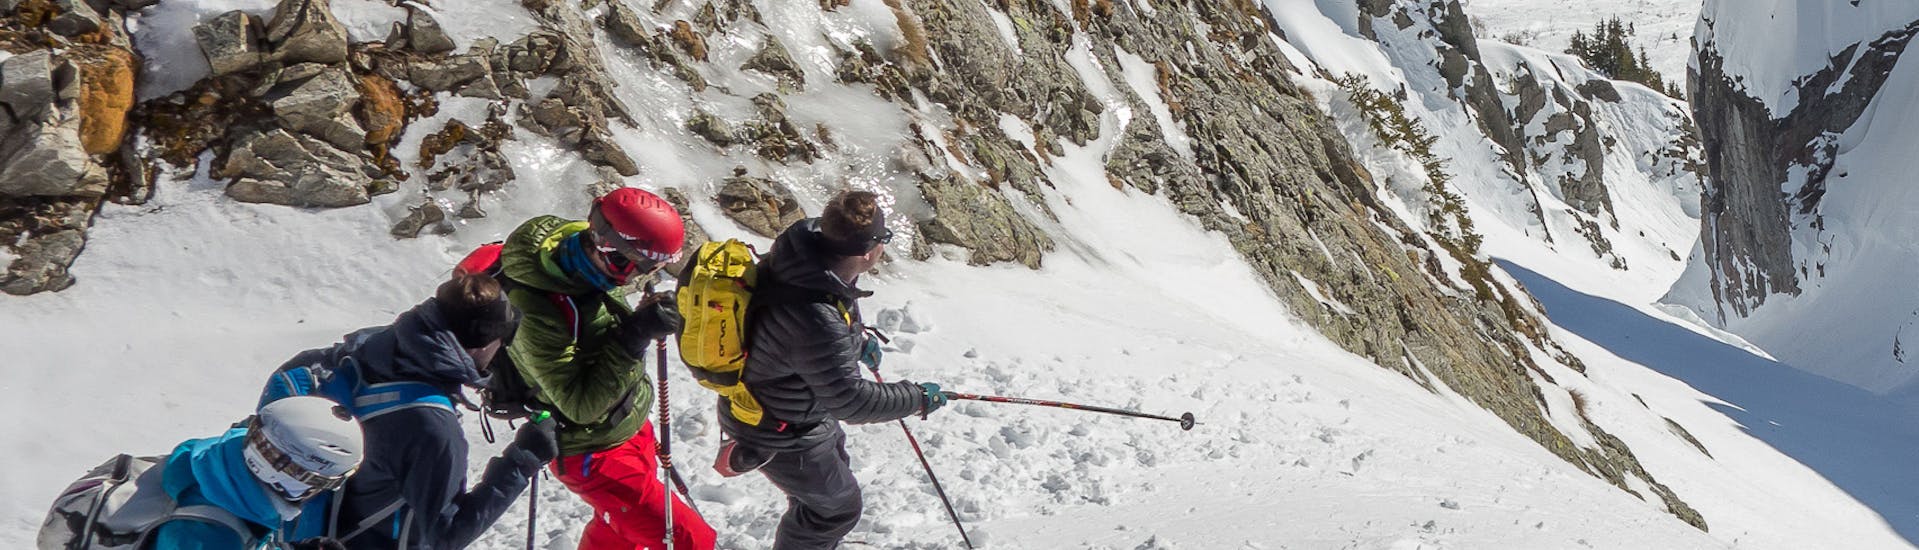 Des personnes explorent pendant une leçon privée de ski hors-piste pour skieurs avancés à Chamonix.